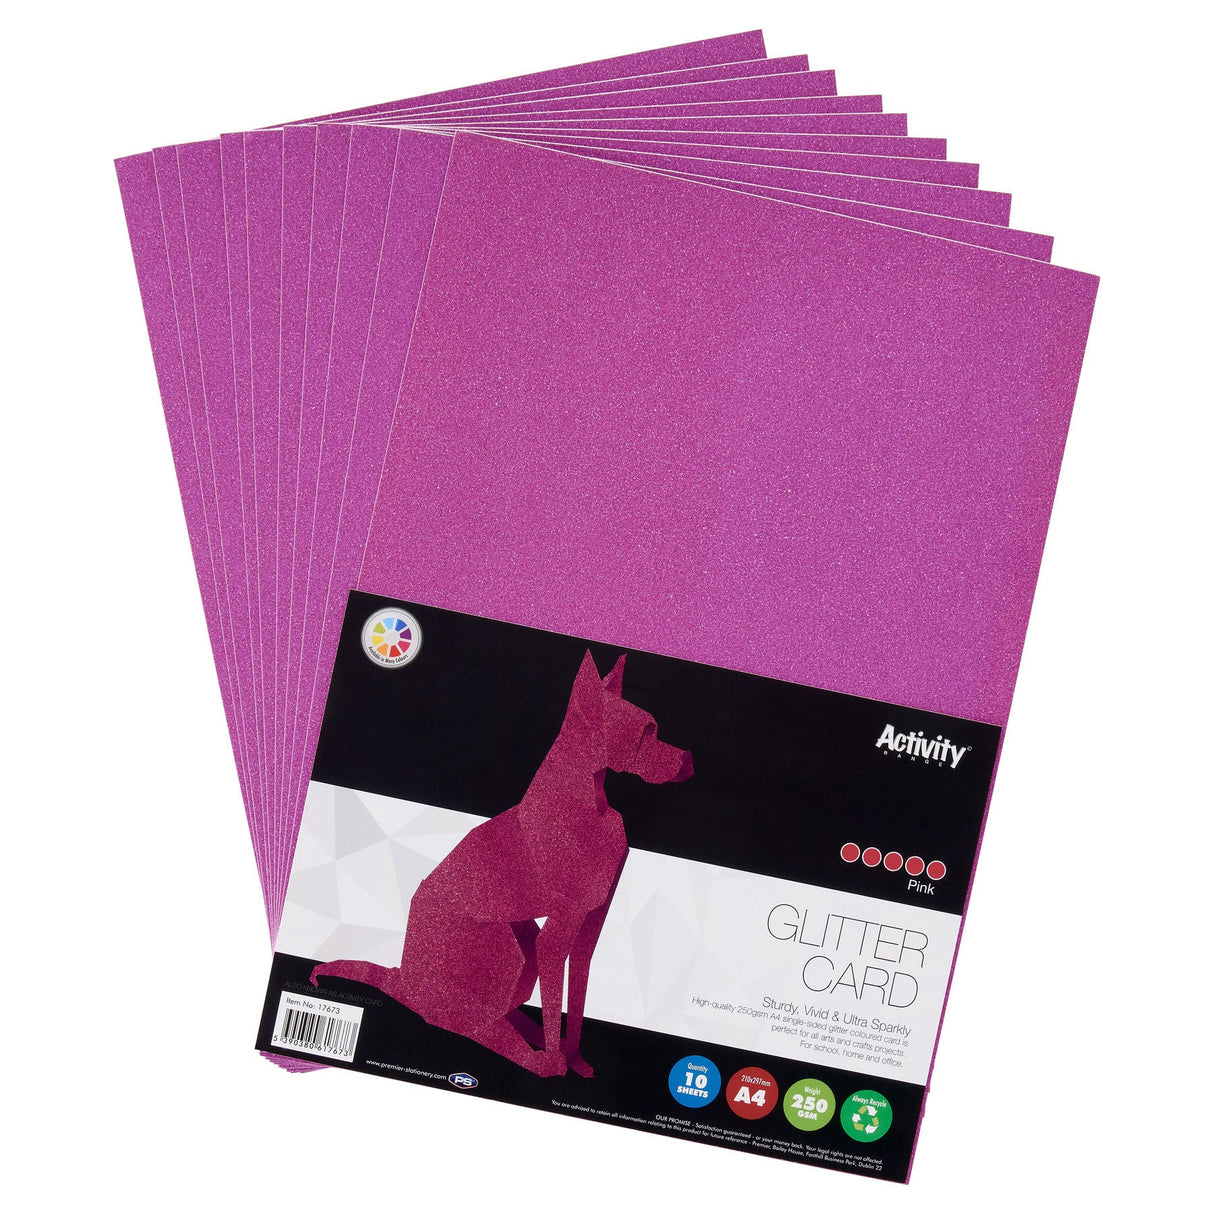 Premier Activity A4 Glitter Card - 250 gsm - Pink - 10 Sheets-Craft Paper & Card-Premier|StationeryShop.co.uk